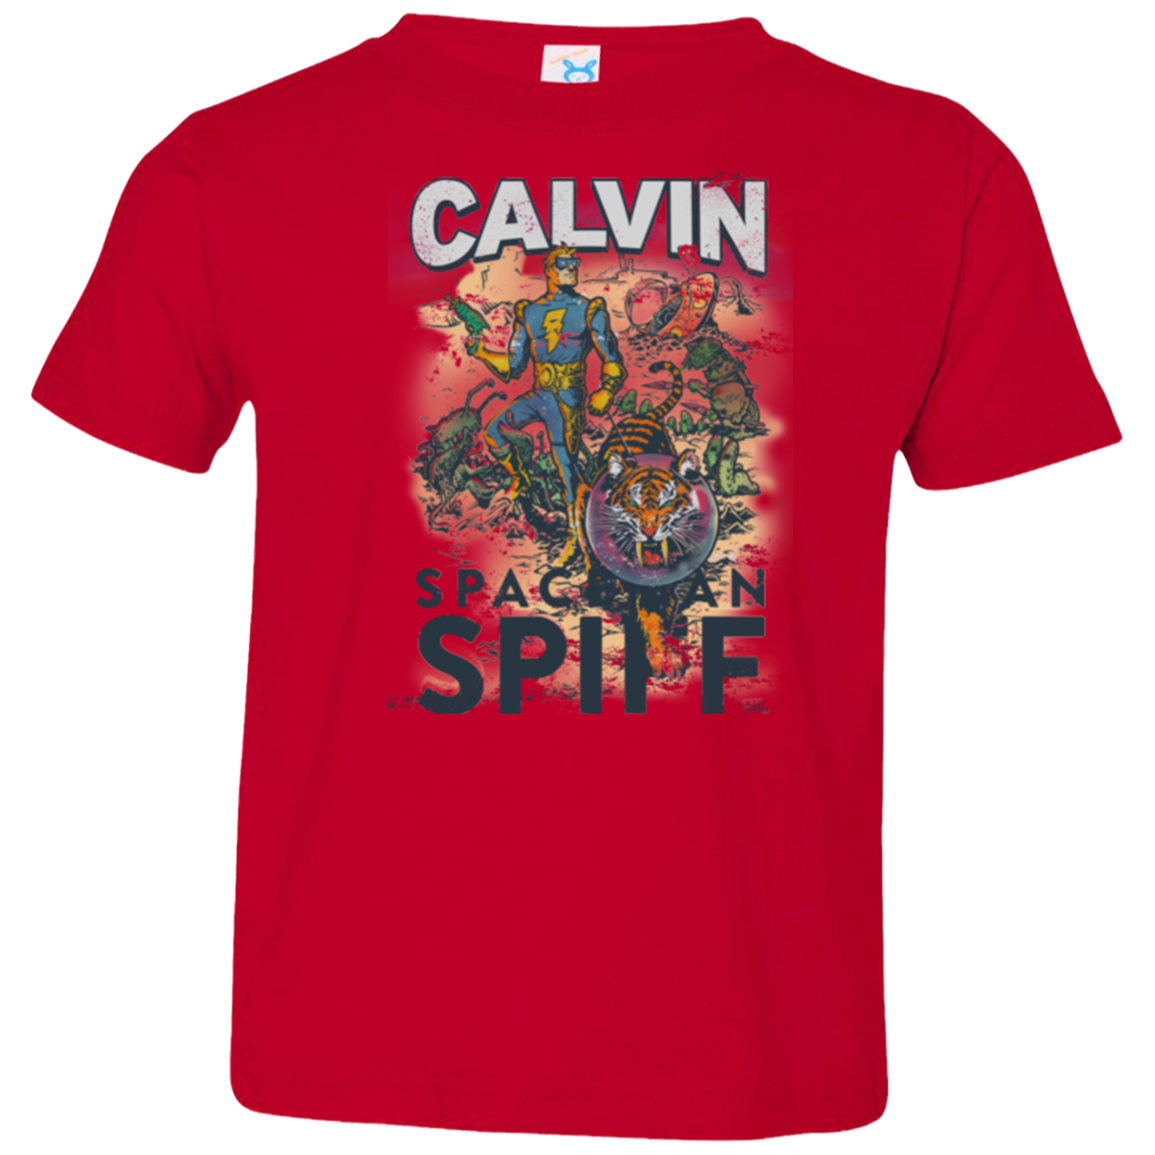 Spaceman Spiff Toddler Premium T-Shirt